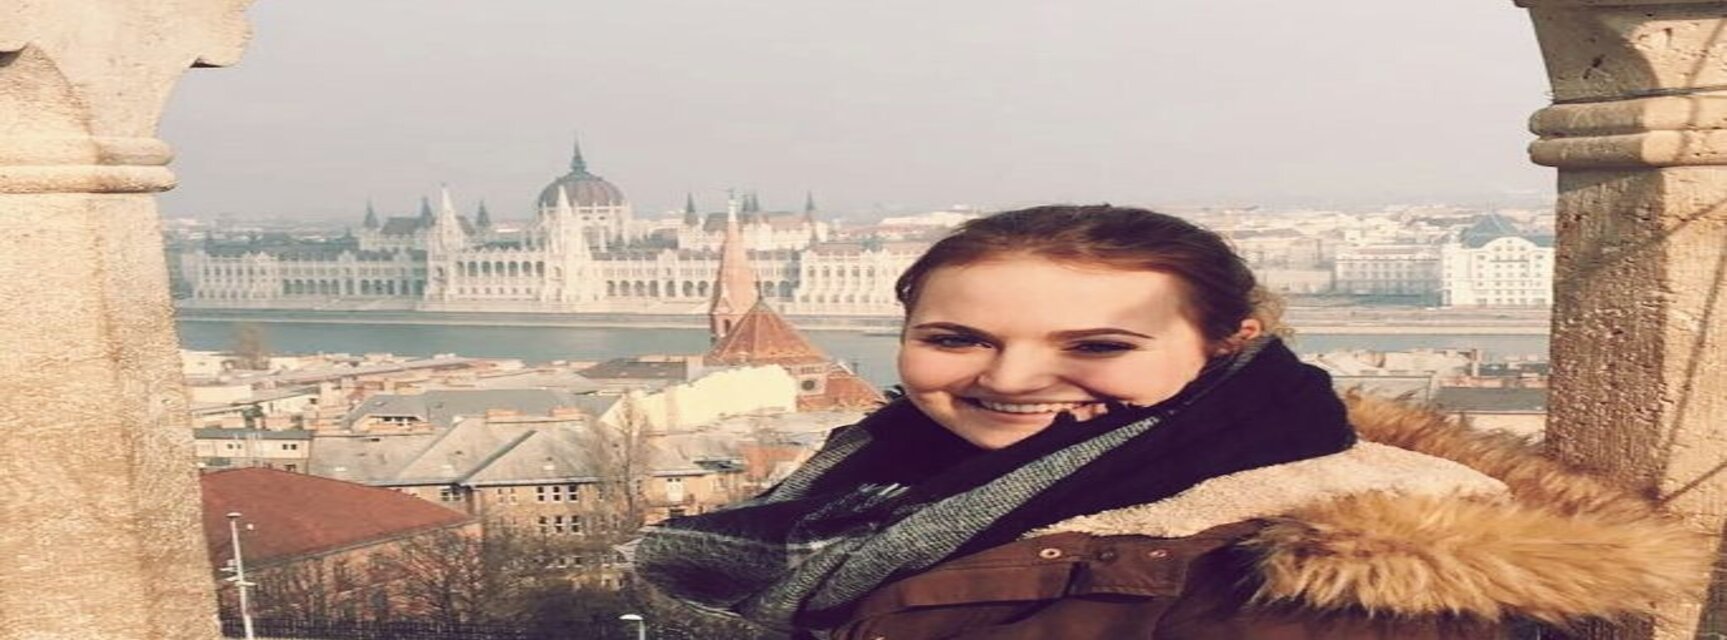 Nina in Hungary